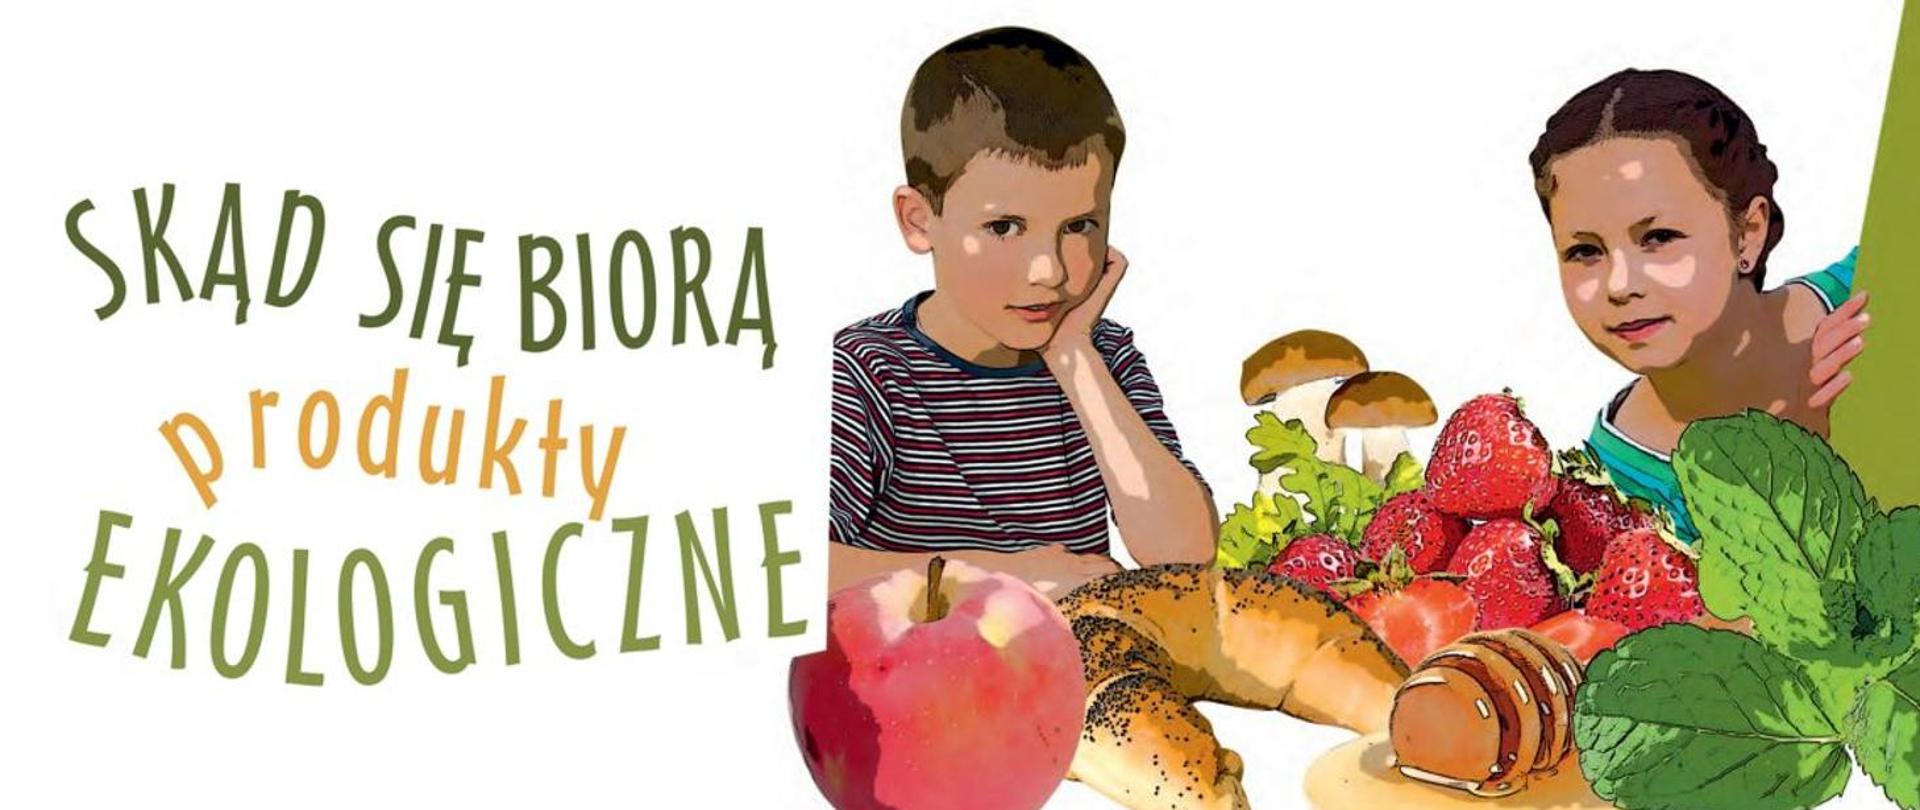 Grafika przedstawiająca dziewczynkę i chłopca przy stole pełnym warzyw, owoców, ale też pieczywa. Z napisem "Skąd się biorą produkty ekologiczne" 